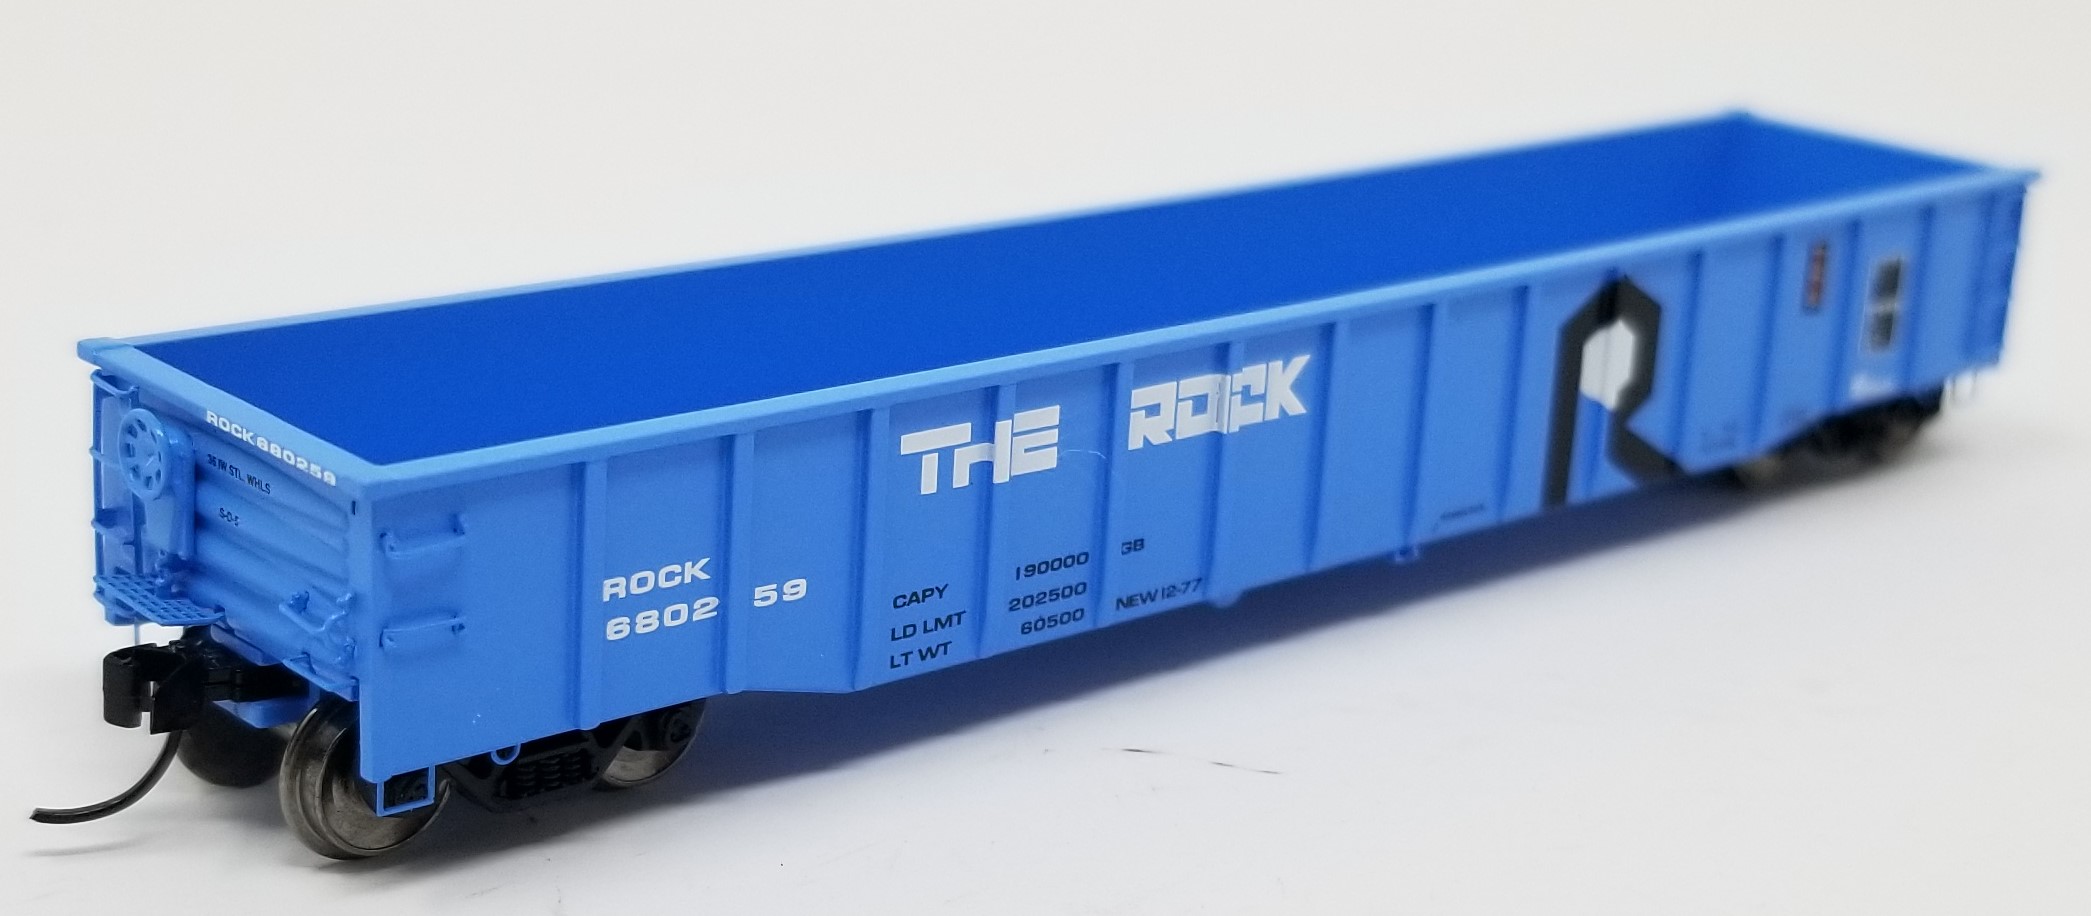 Trainworx N 25243-21 Thrall 52’6 Gondola Car 'The Rock' Rock Island ROCK #680192